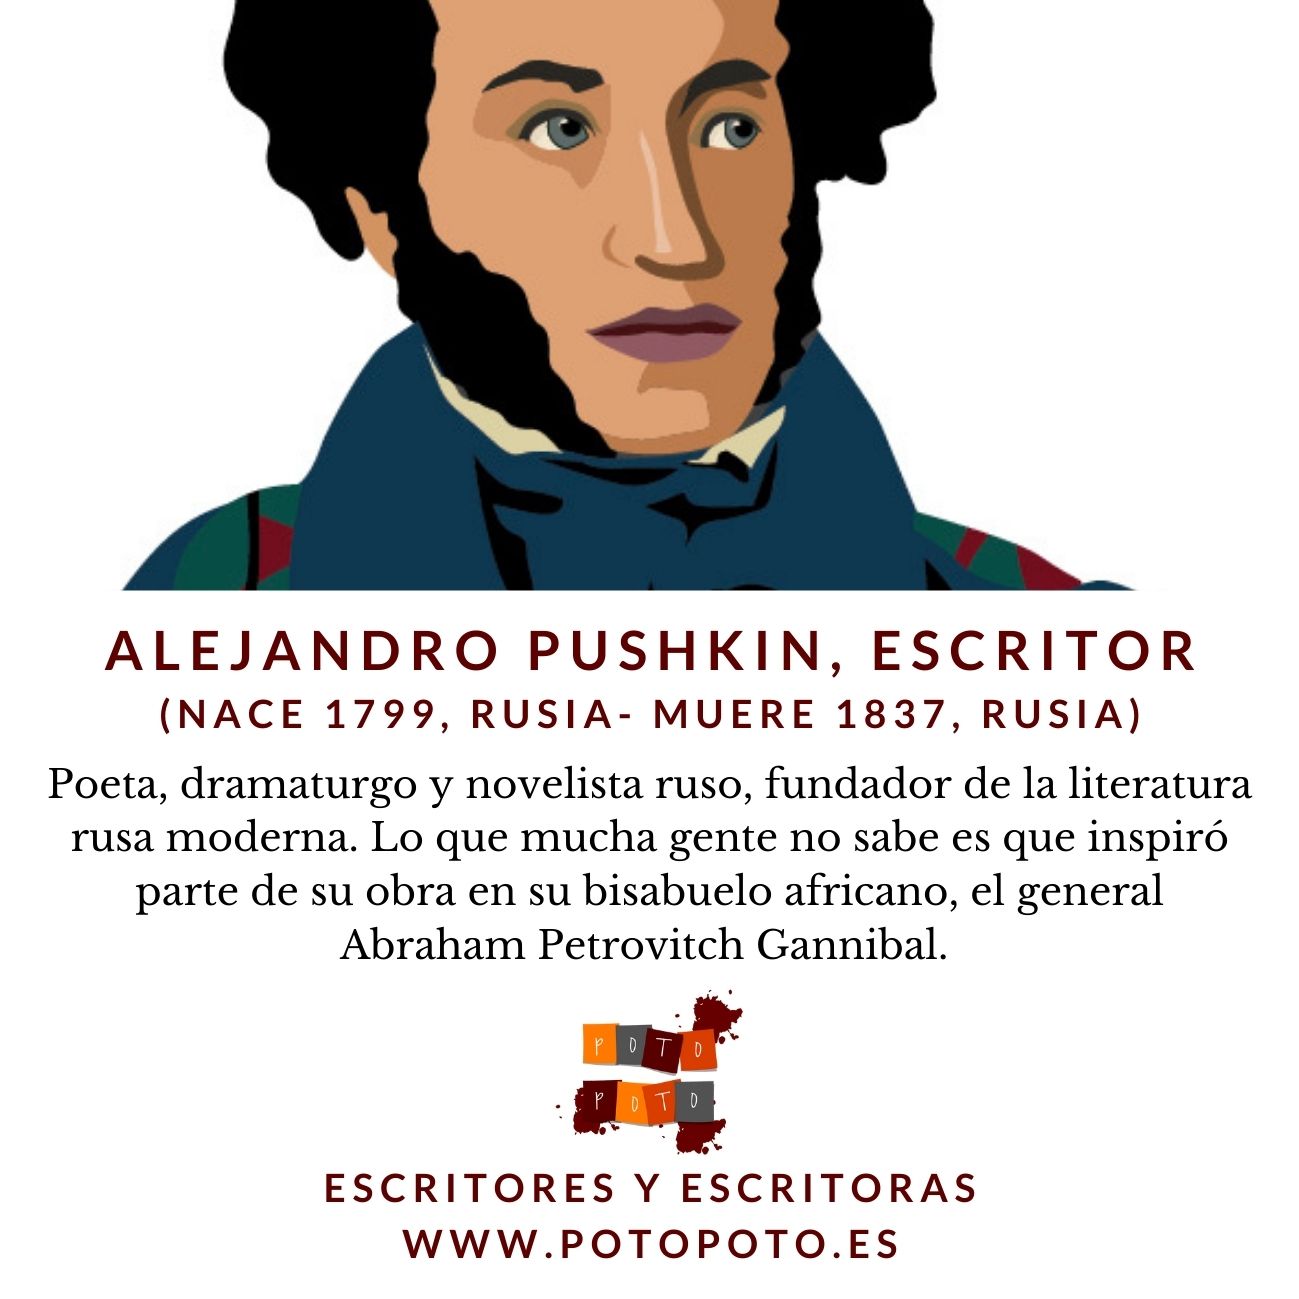 Alejandro Pushkin